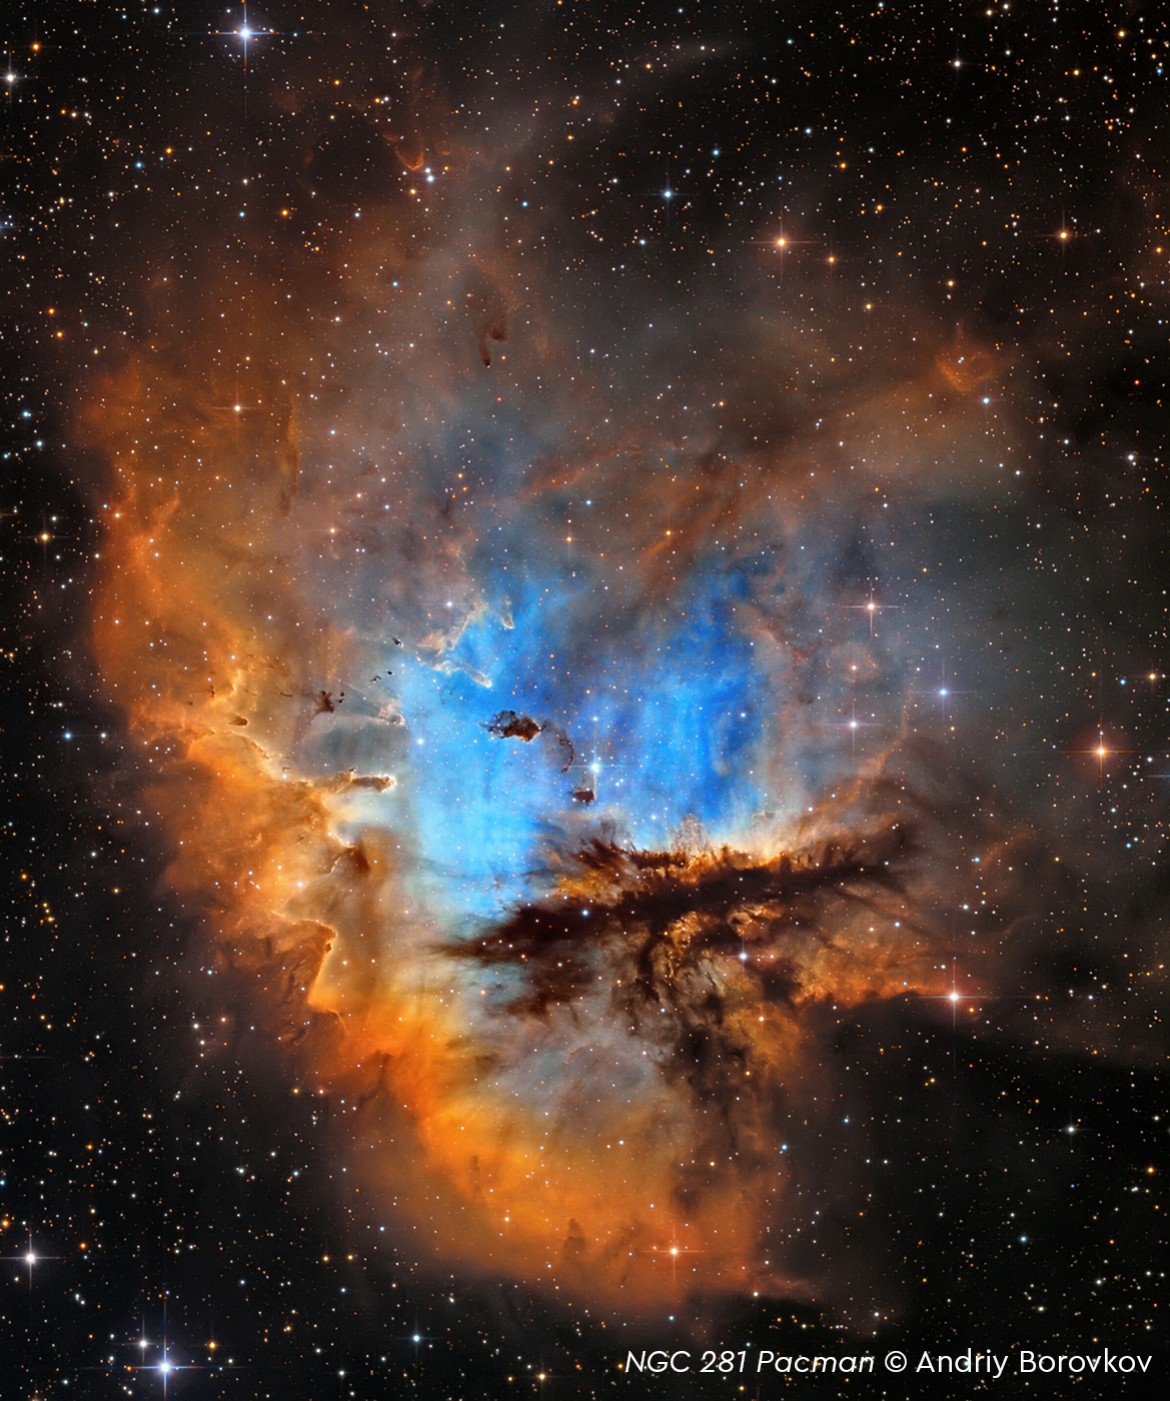 Andriy Borovkov - III miejsce w kategorii "Stars and Nebulae", zdjęcie przedstawia Mgławicę Pacmana (NGC 281)